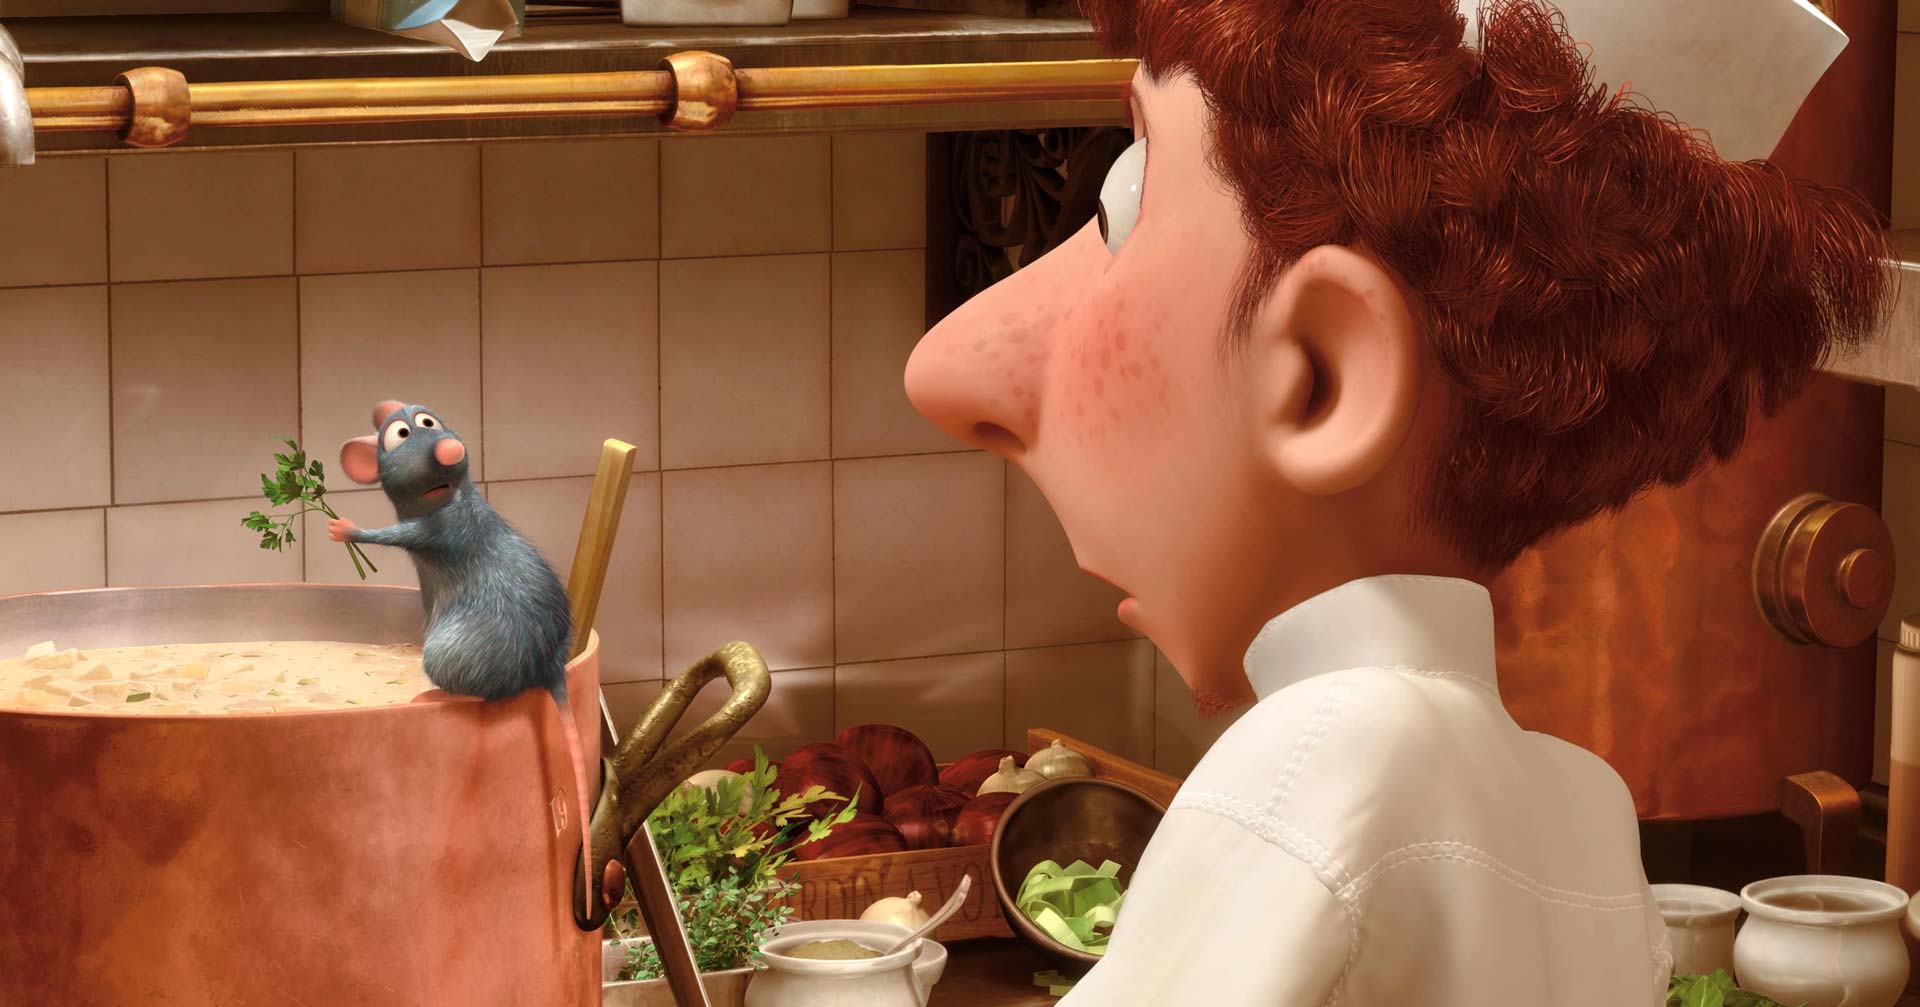 آلفردو و رمی در آشپزخانه در انیمیشن موش سرآشپز